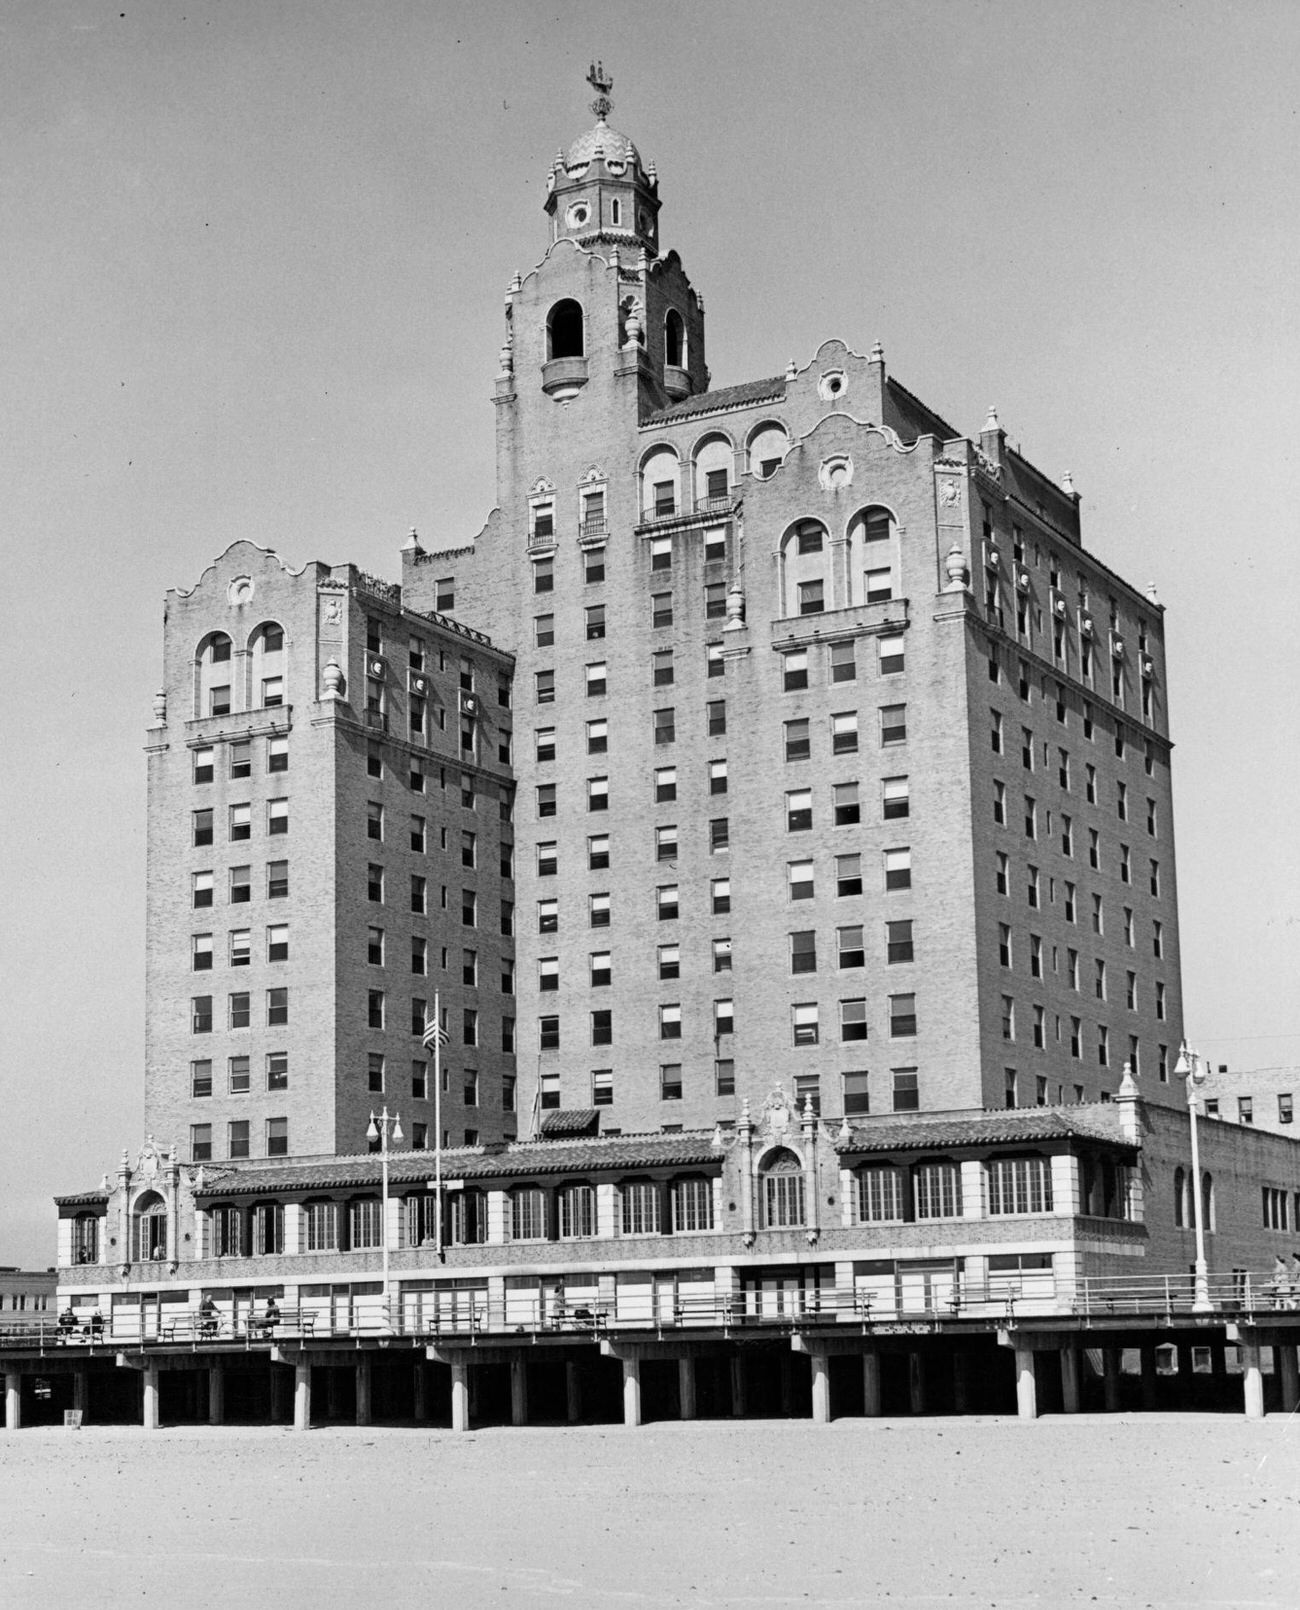 Half Moon Hotel Overlooking Coney Island, 1955